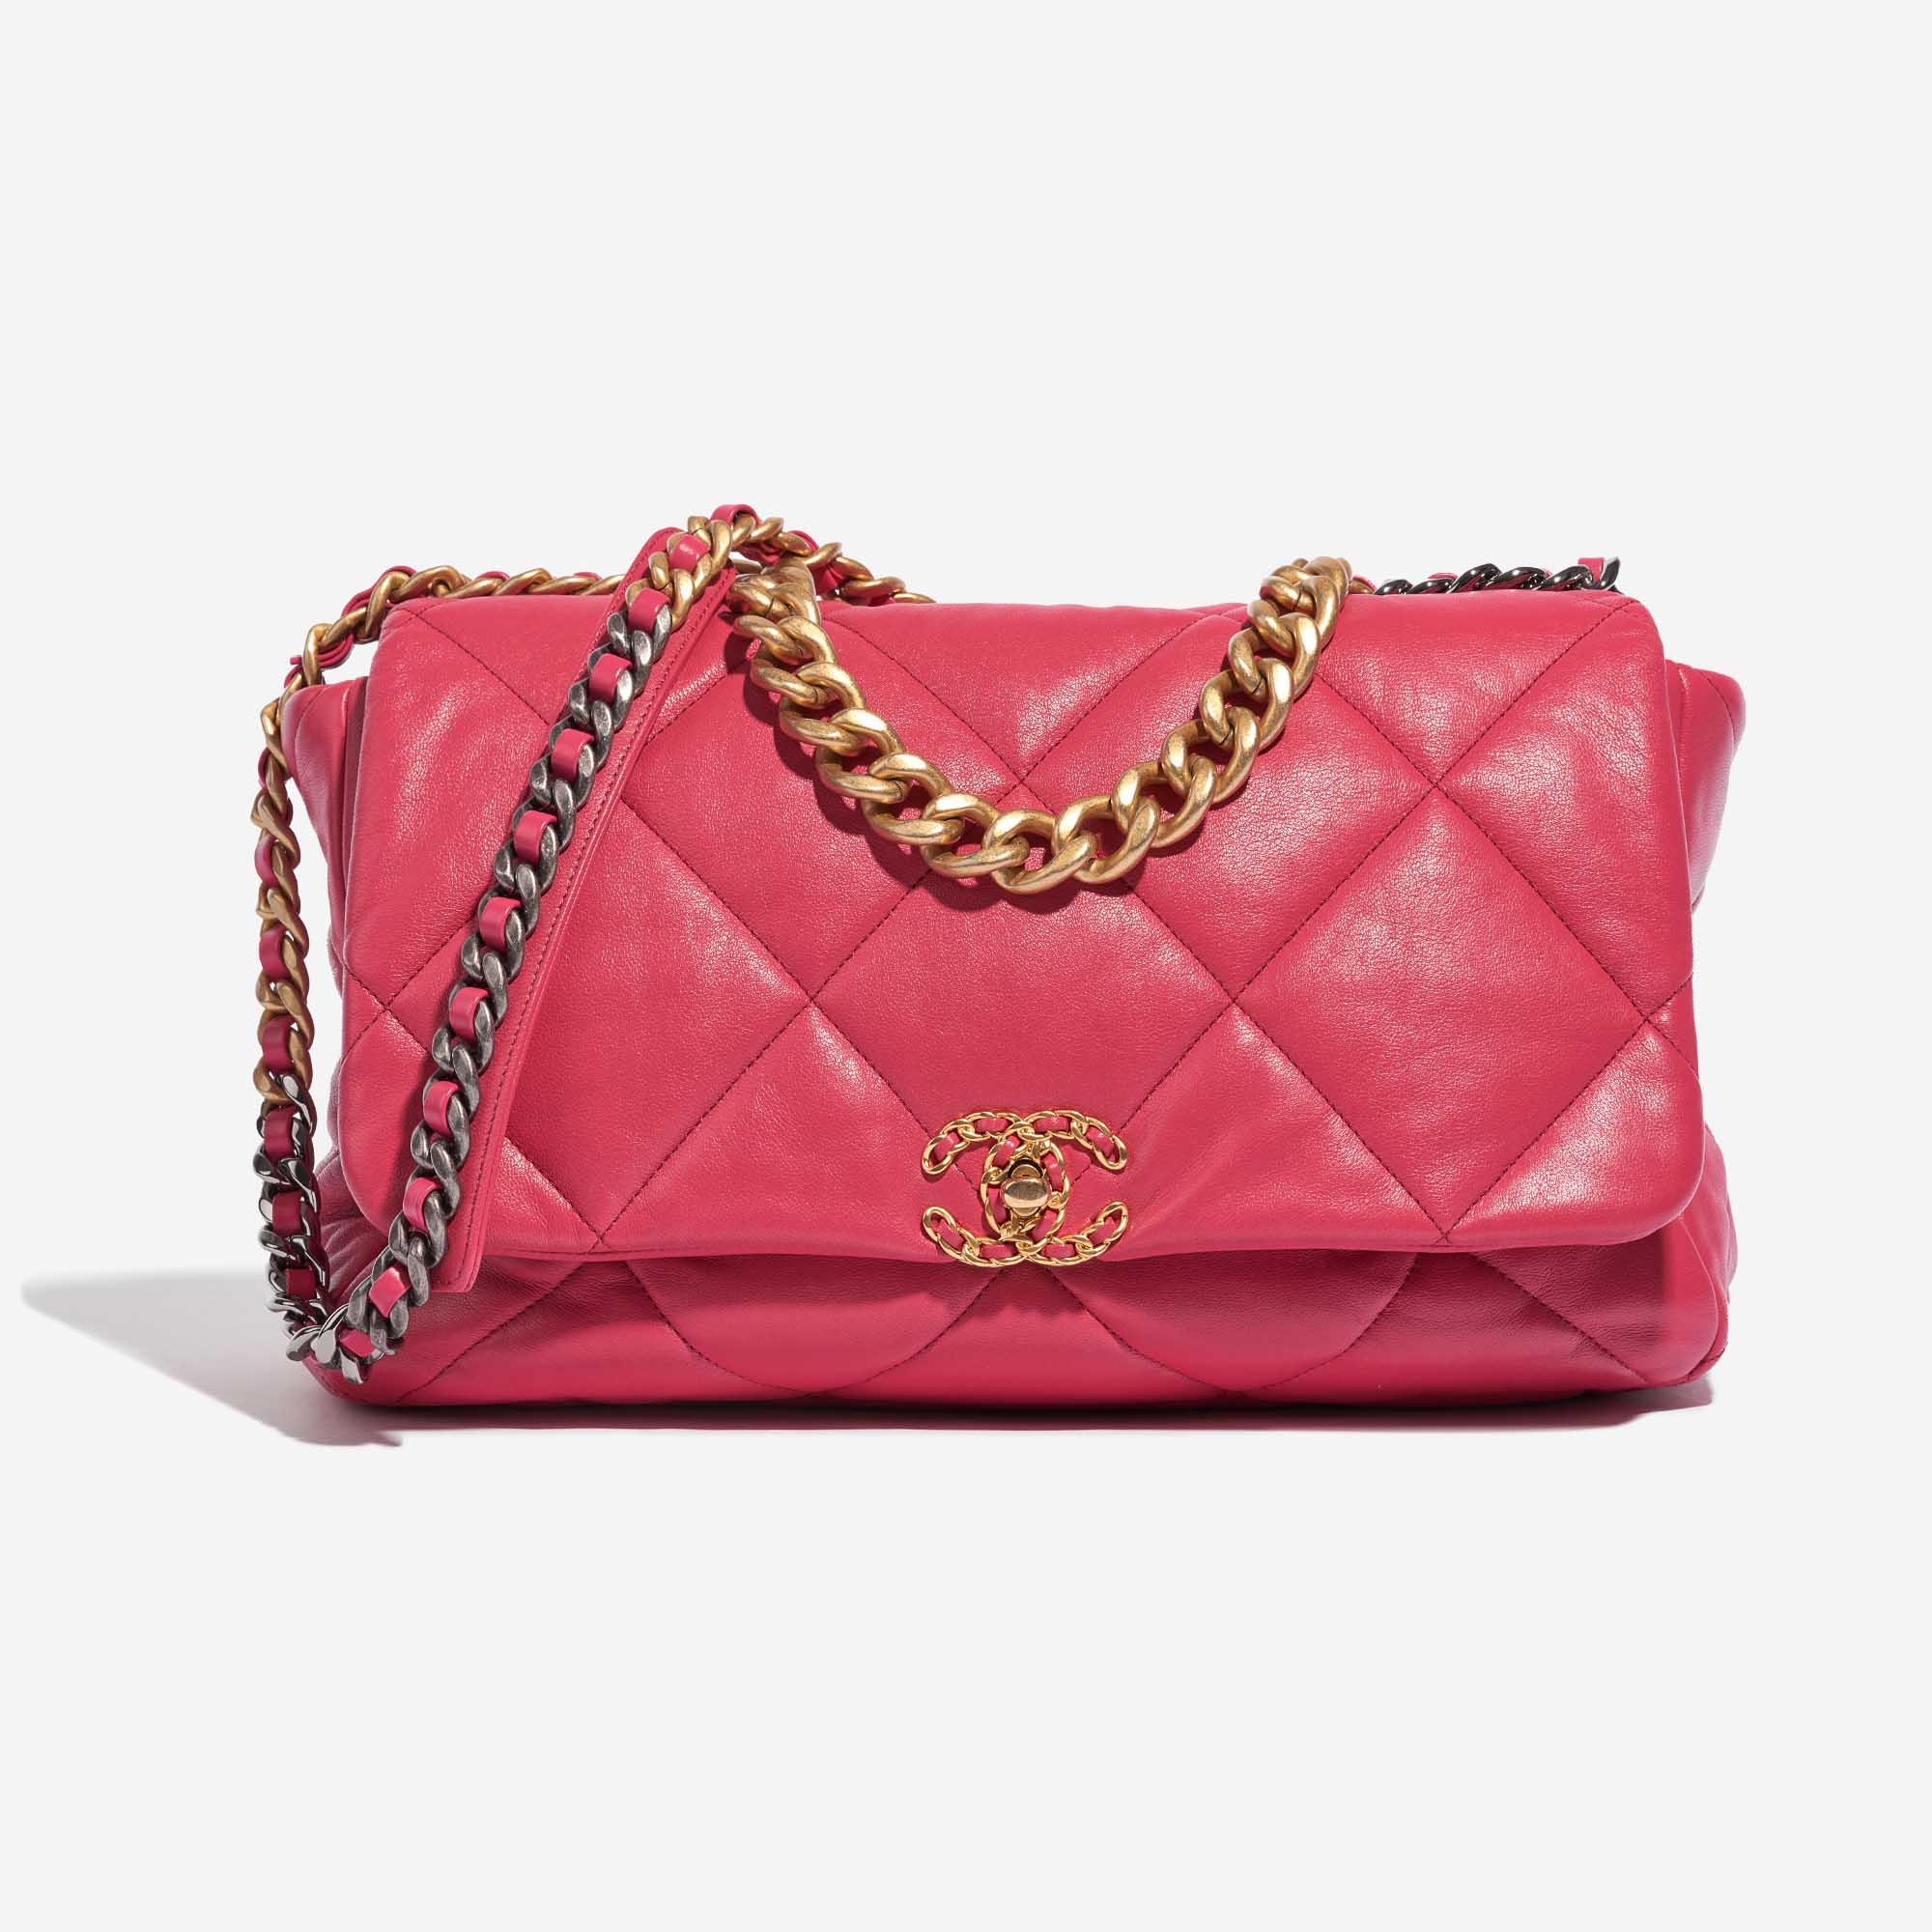 Pre-owned Chanel Tasche 19 Maxi Flap Bag Lammleder Pink Pink Front | Verkaufen Sie Ihre Designer-Tasche auf Saclab.com